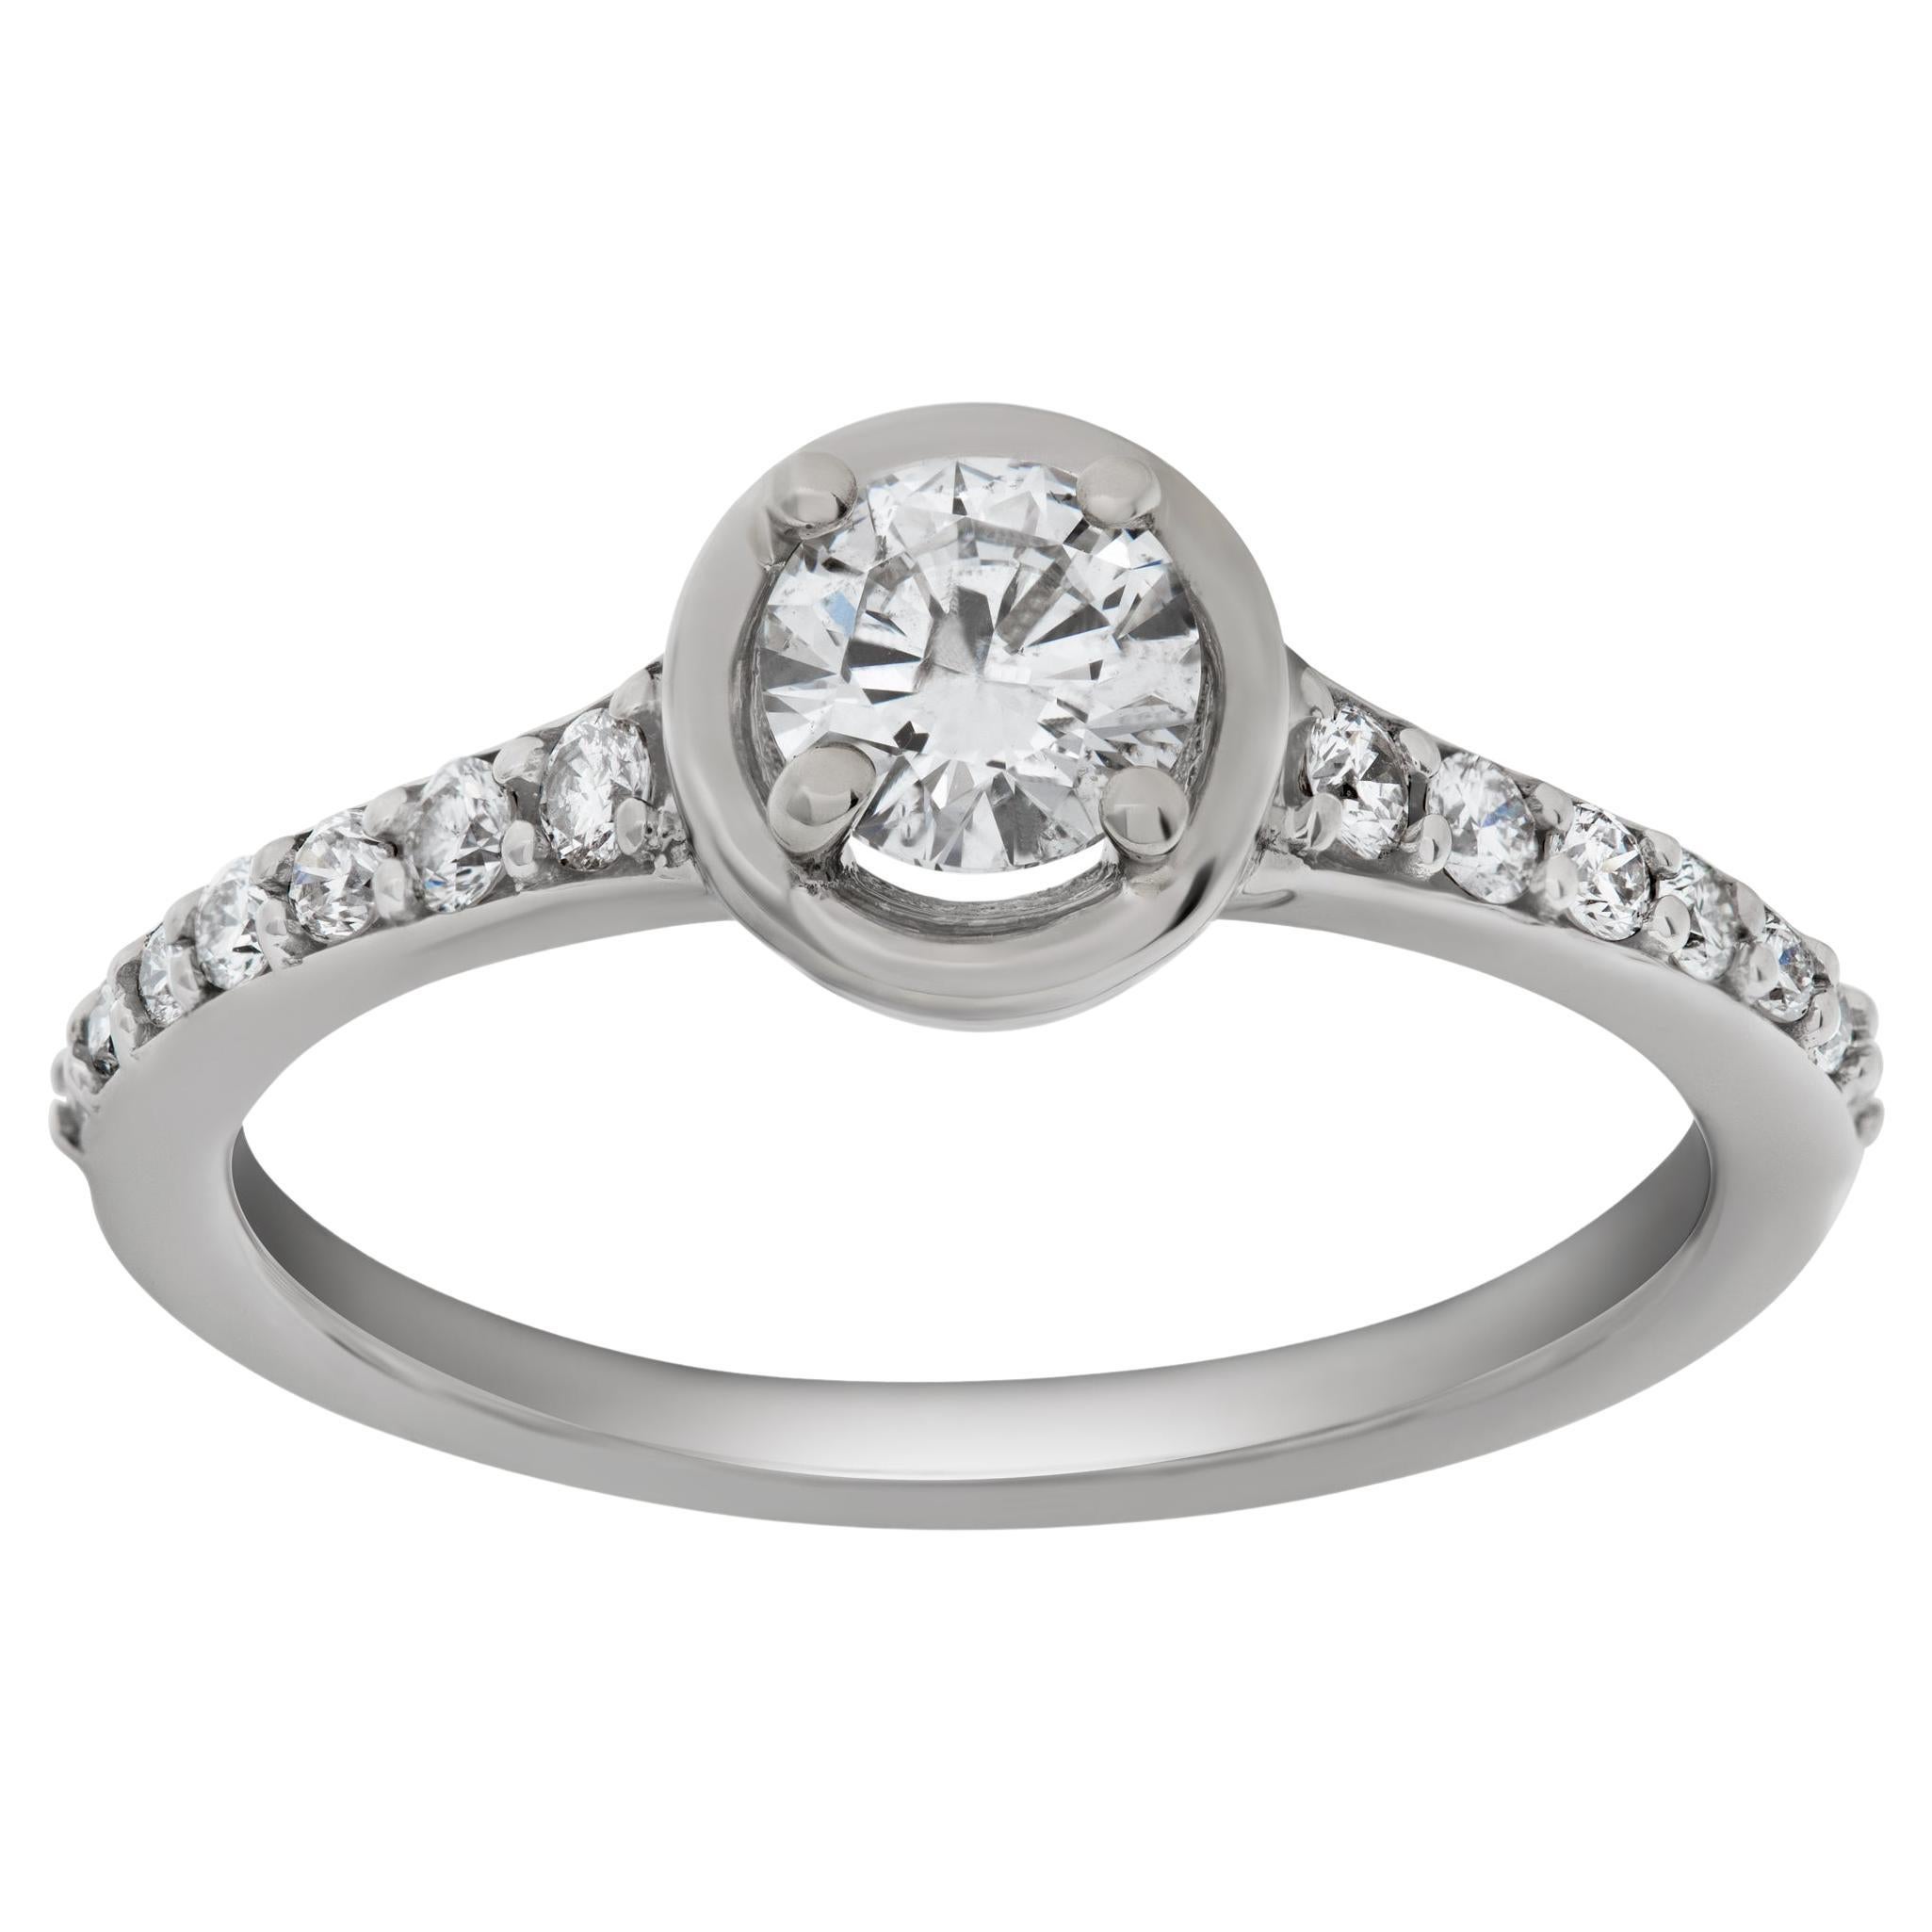 Diamond Ring in 14k White Gold. 0.75 Carats in Diamonds